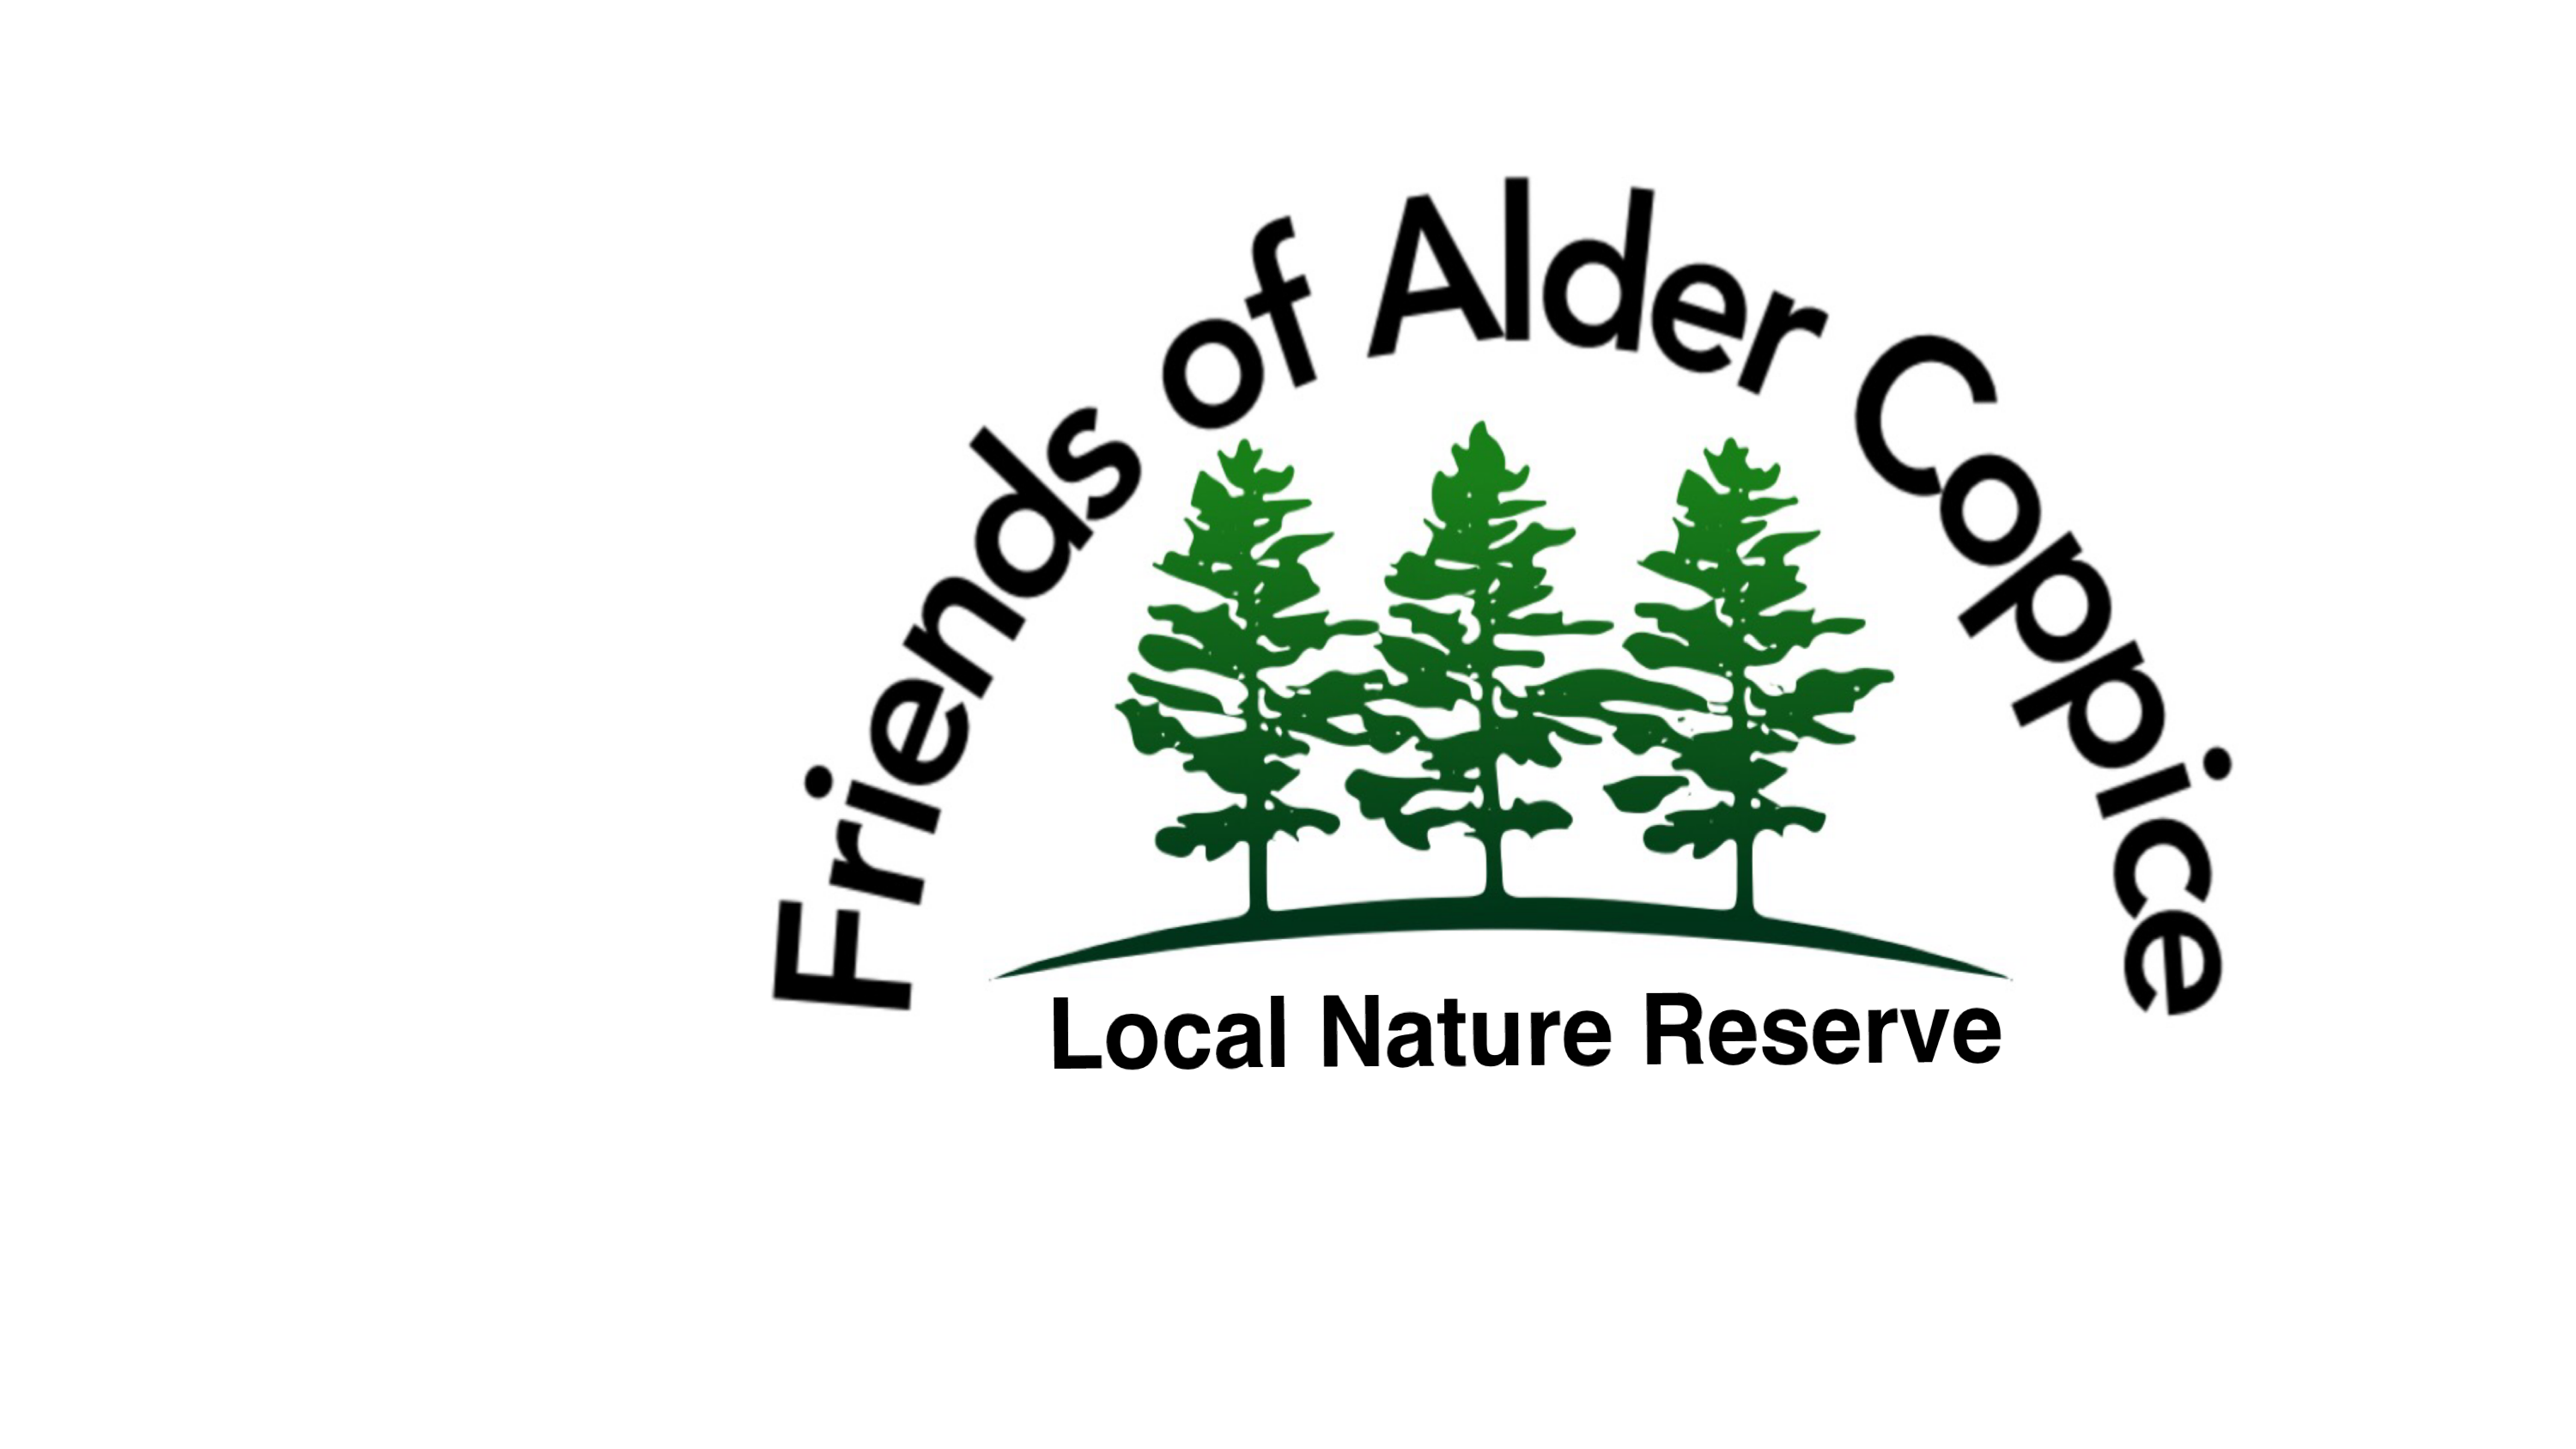 Friends of Alder Coppice Local Nature Reserve